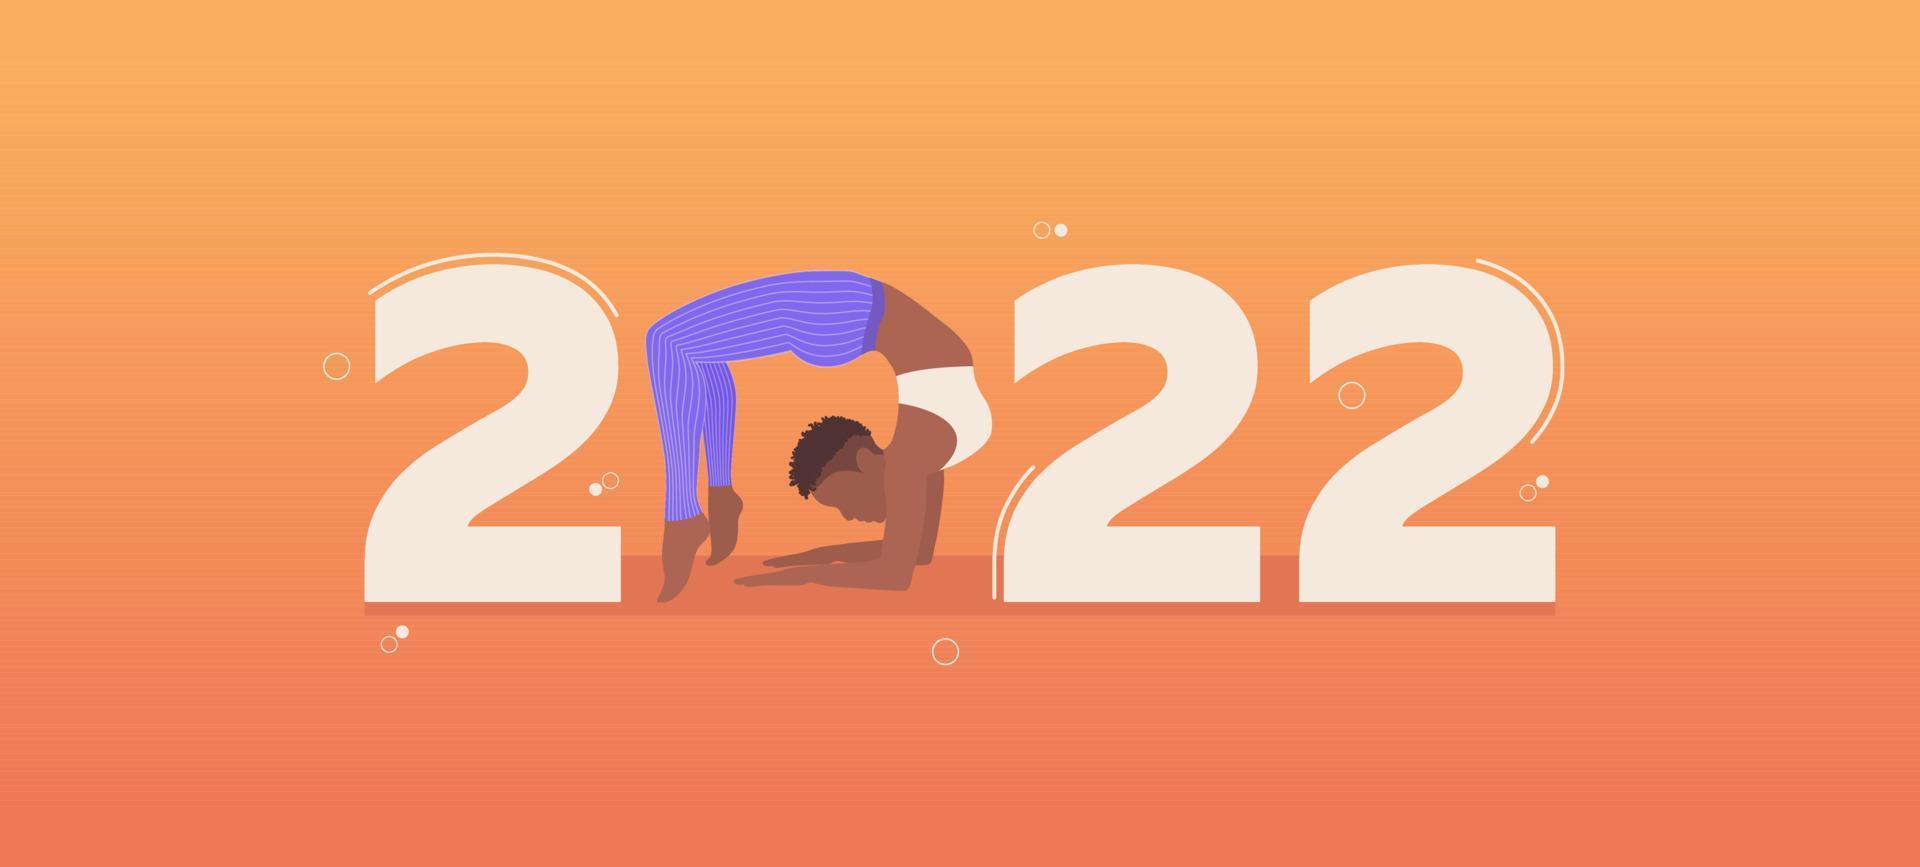 gott nytt år 2022. yoga vektor banner 2022 med yogaställning. vektor illustration.